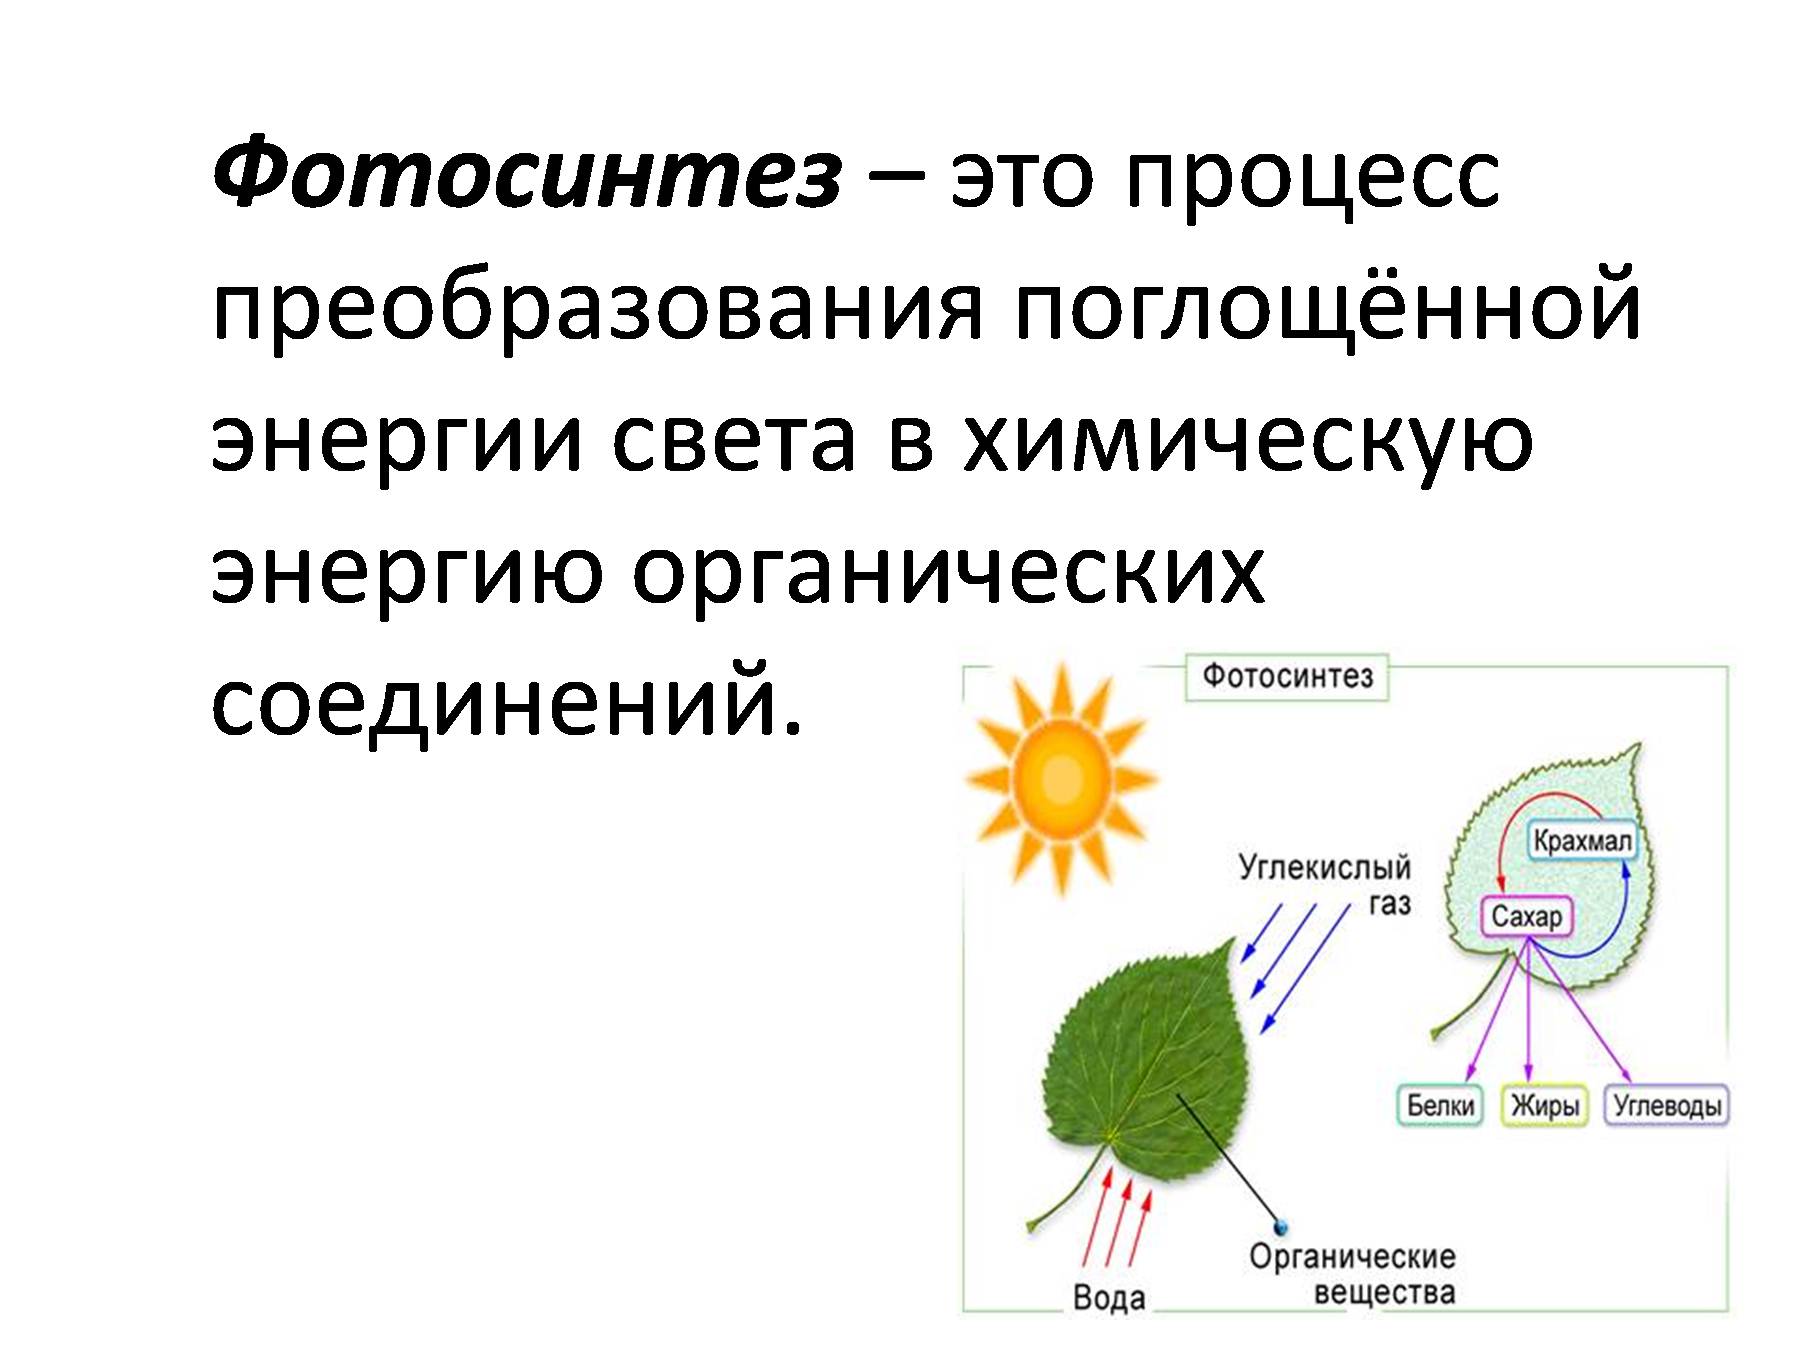 Фотосинтез: световая фаза, темновая фаза, фотодыхание, хемосинтез